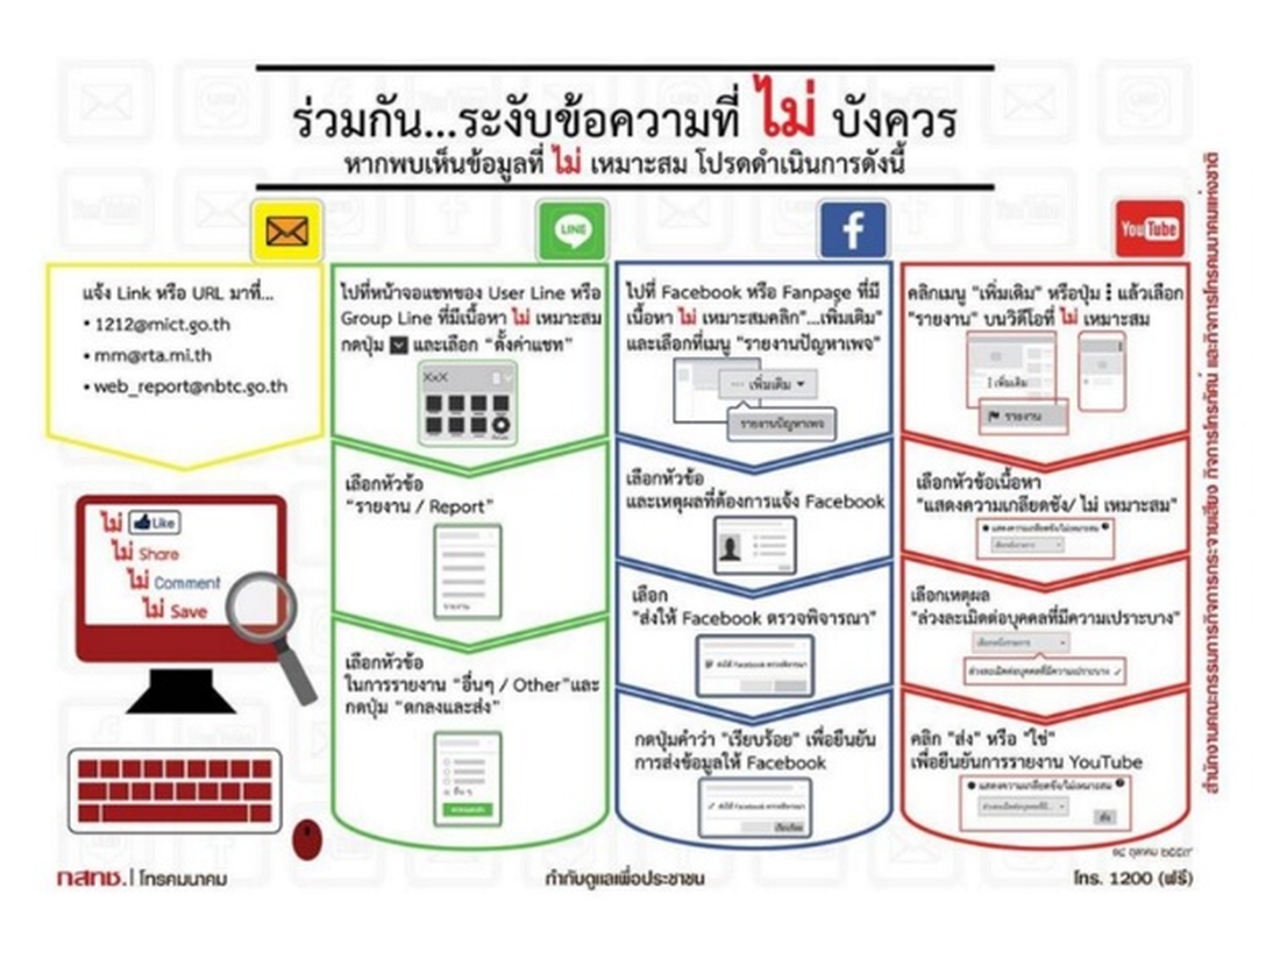 Thailands Regulierungsbehörde möchte, dass sich die Nutzer der sozialen Netzwerke gegenseitig ausspionieren